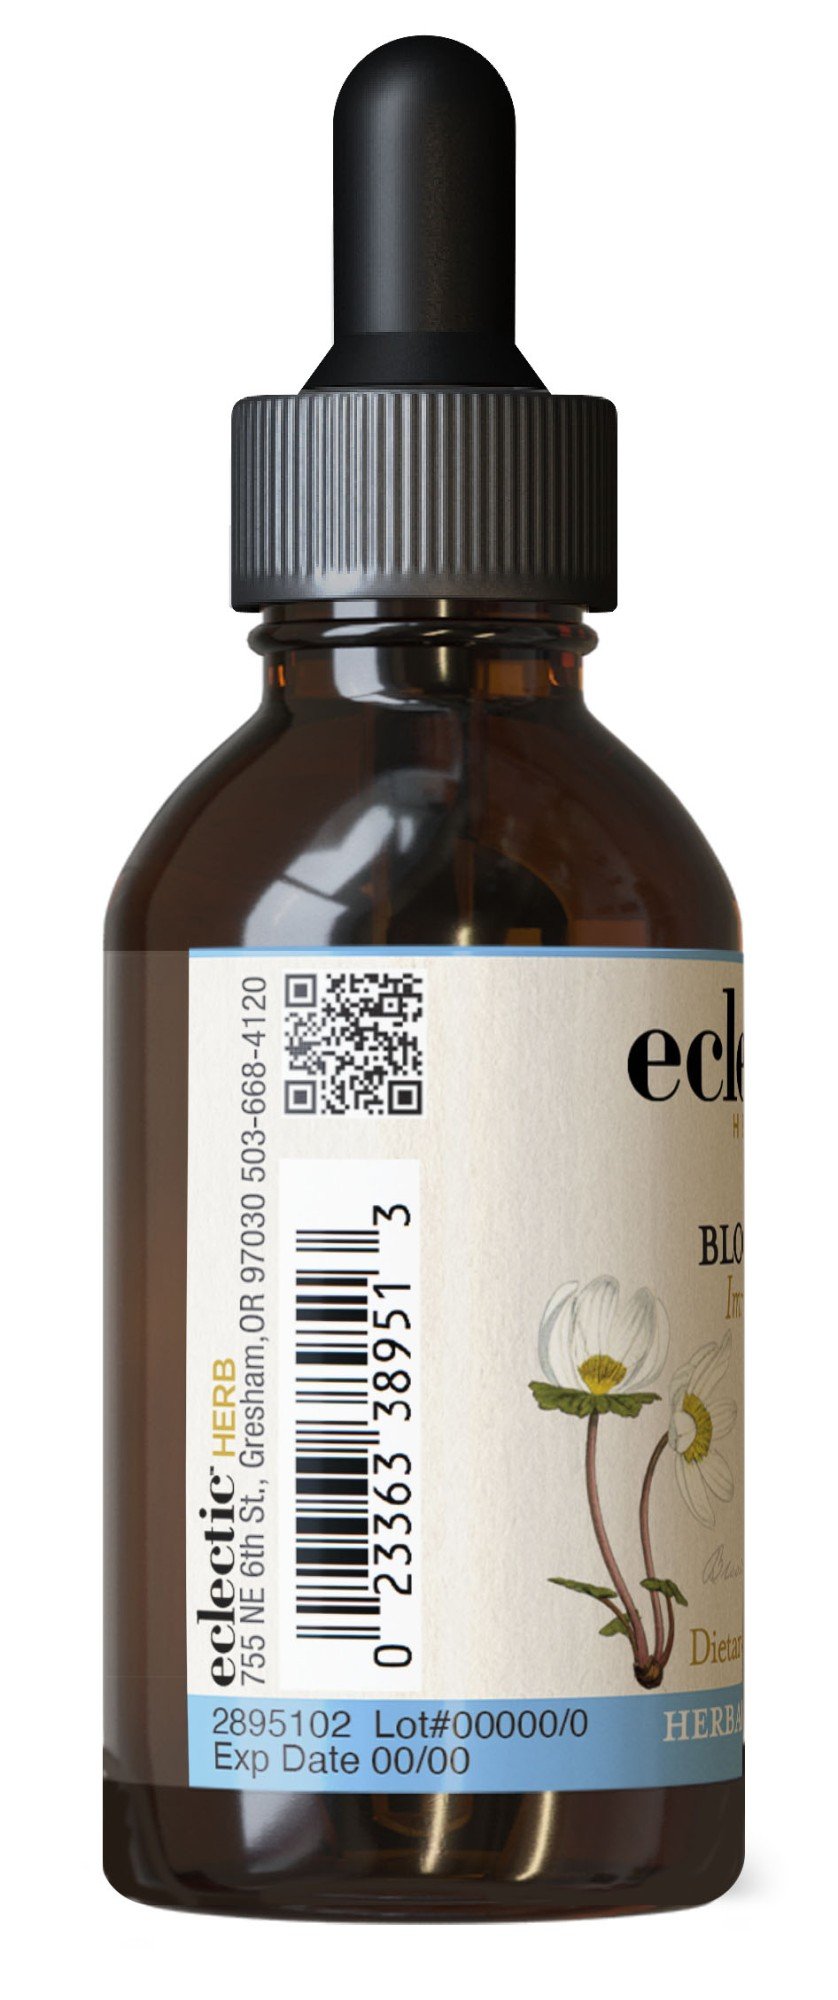 Eclectic Herb Bloodroot Extract 2 oz Liquid